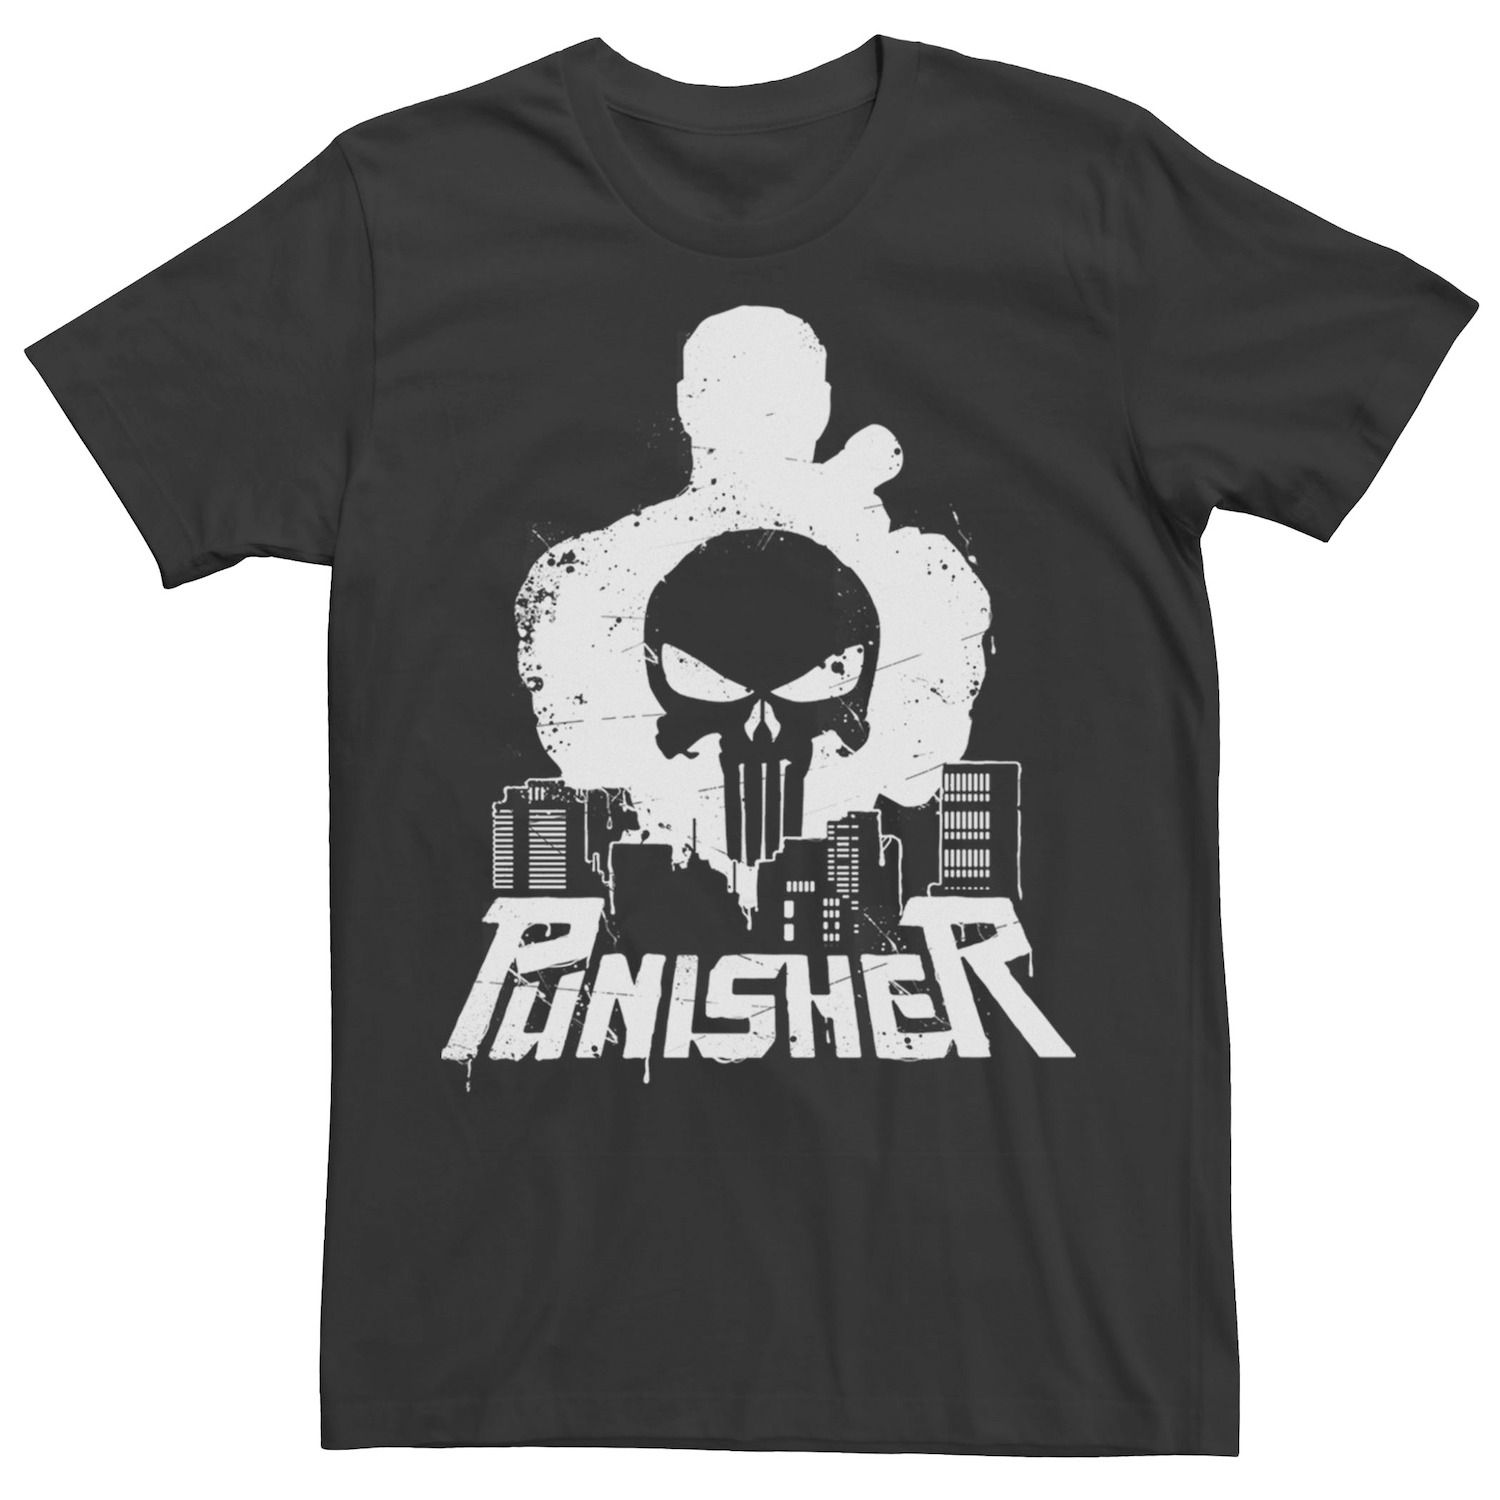 Мужская футболка с рисунком городского пейзажа Marvel The Punisher футболка мужская marvel punisher s